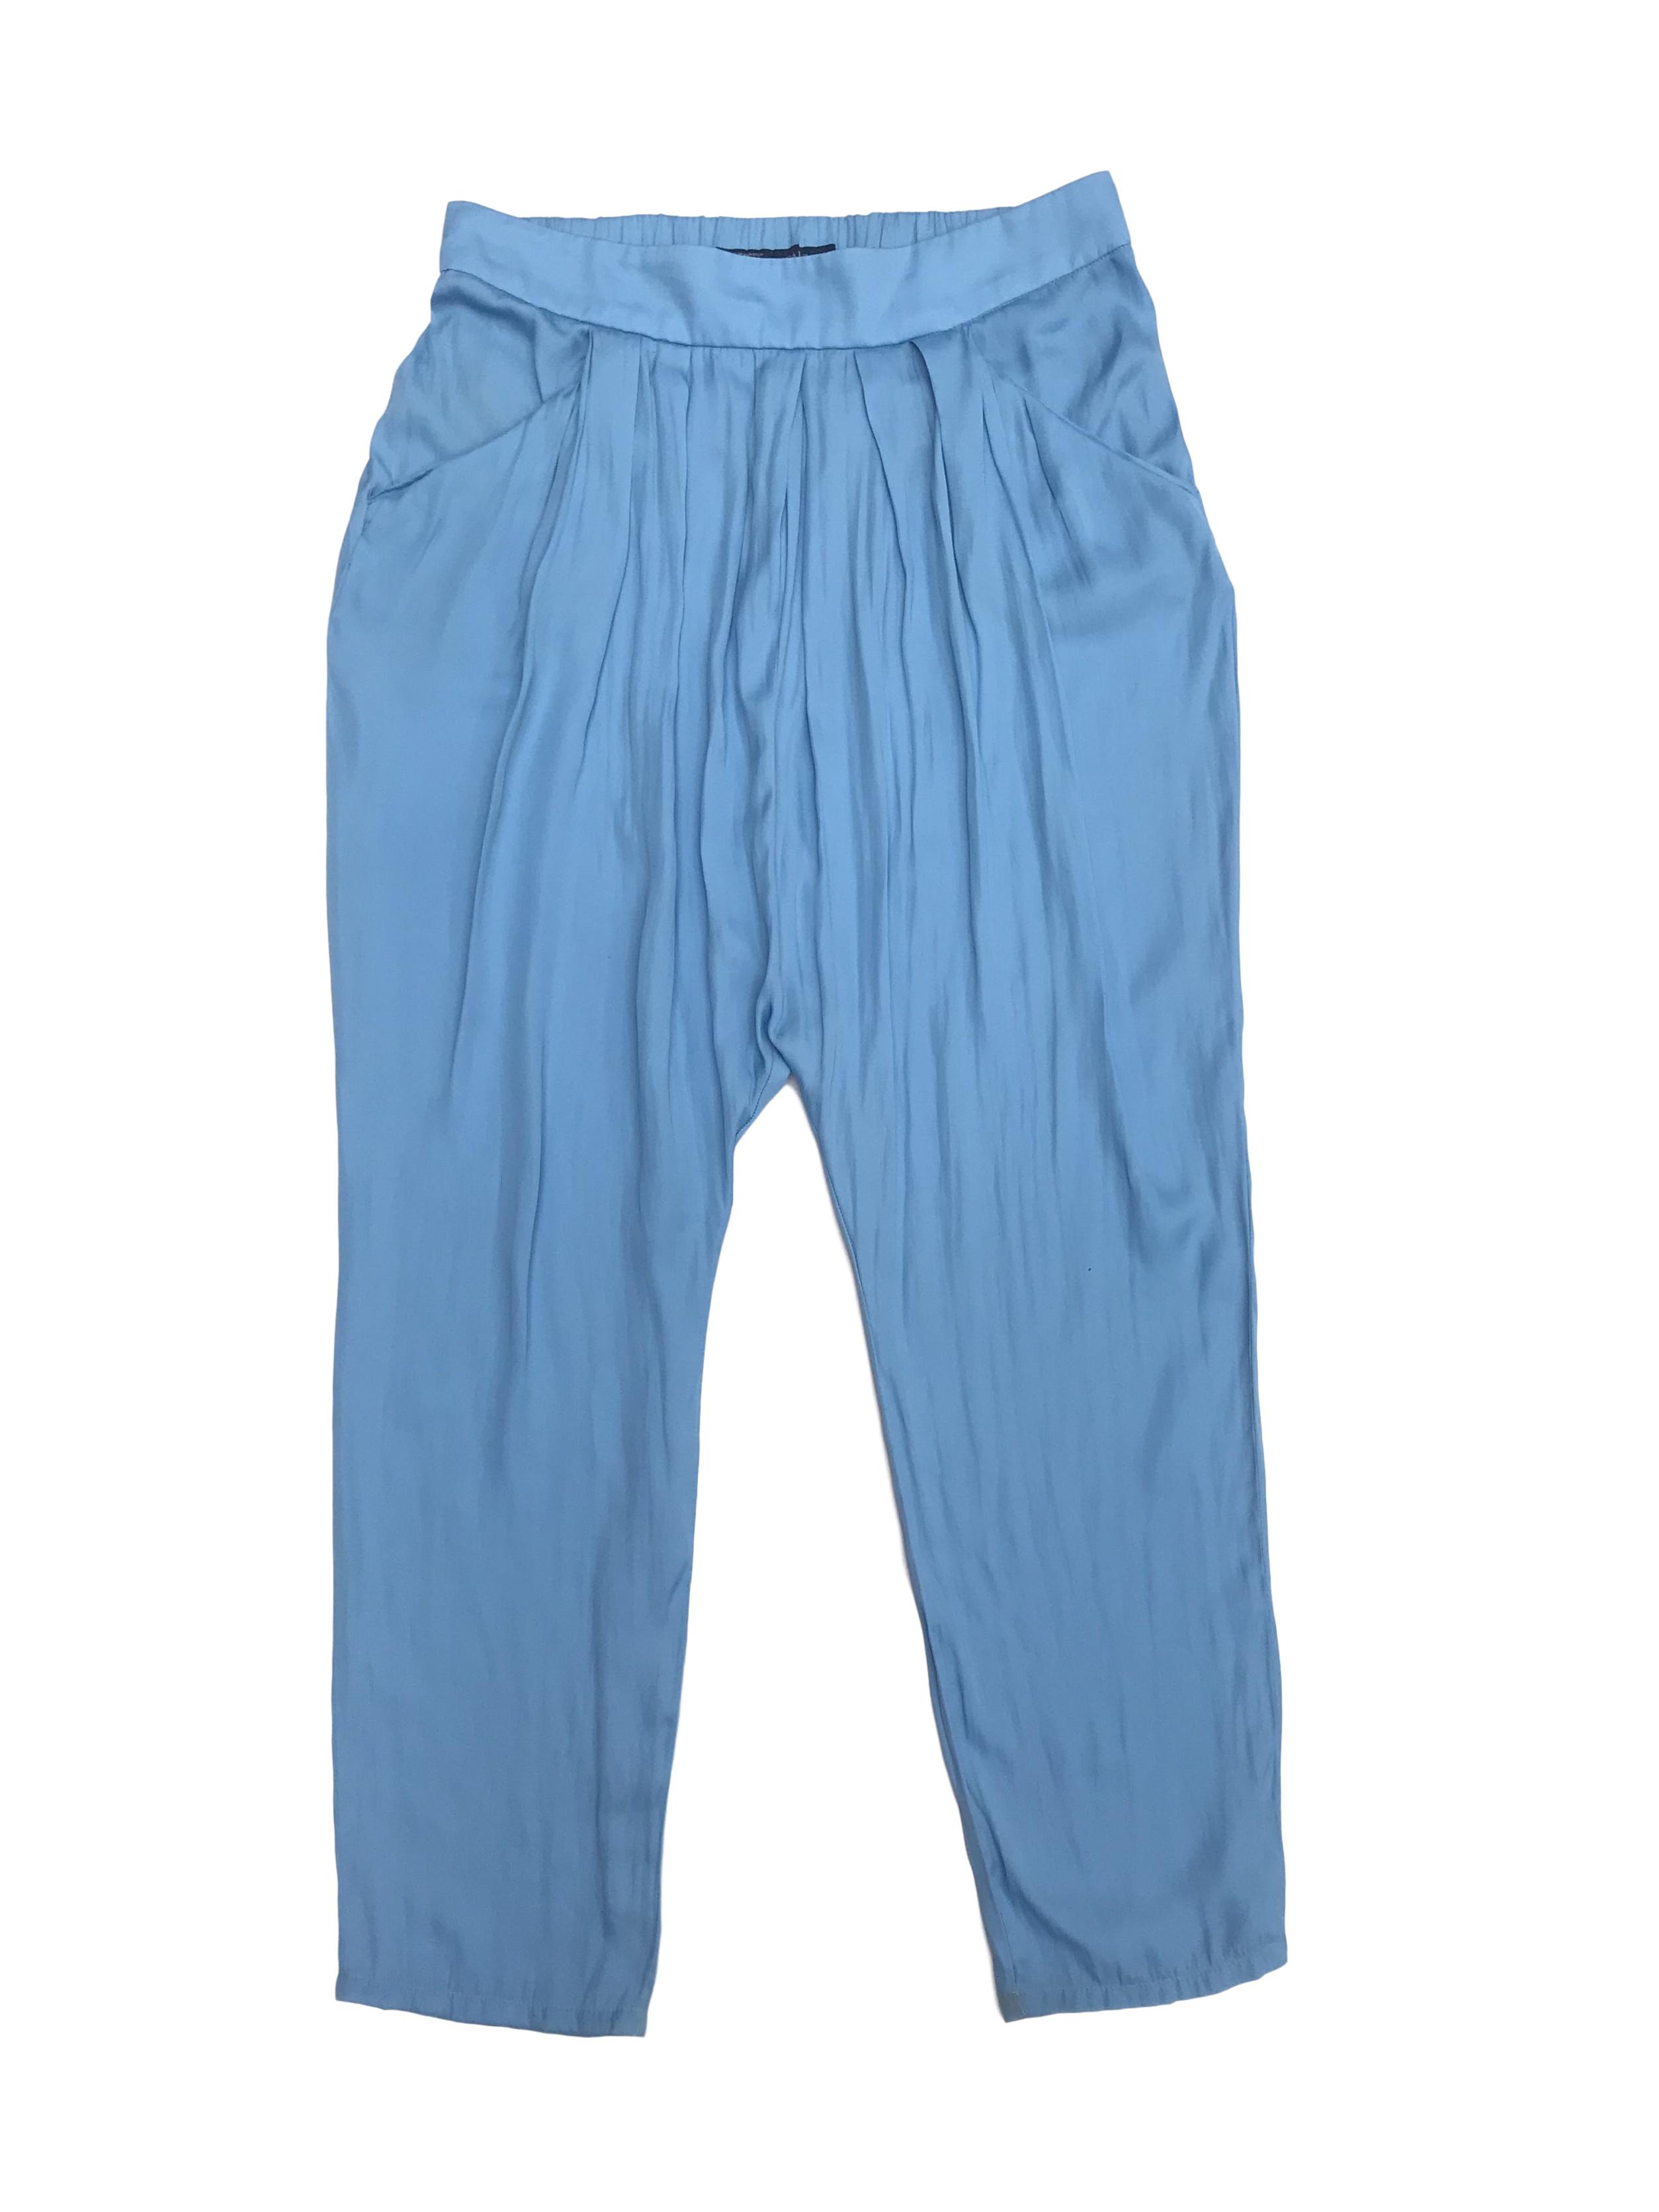 Pantalón Zara celeste de tela tipo seda, estilo baggy con bolsillos delanteros y elástico posterior. Precio original S/ 160